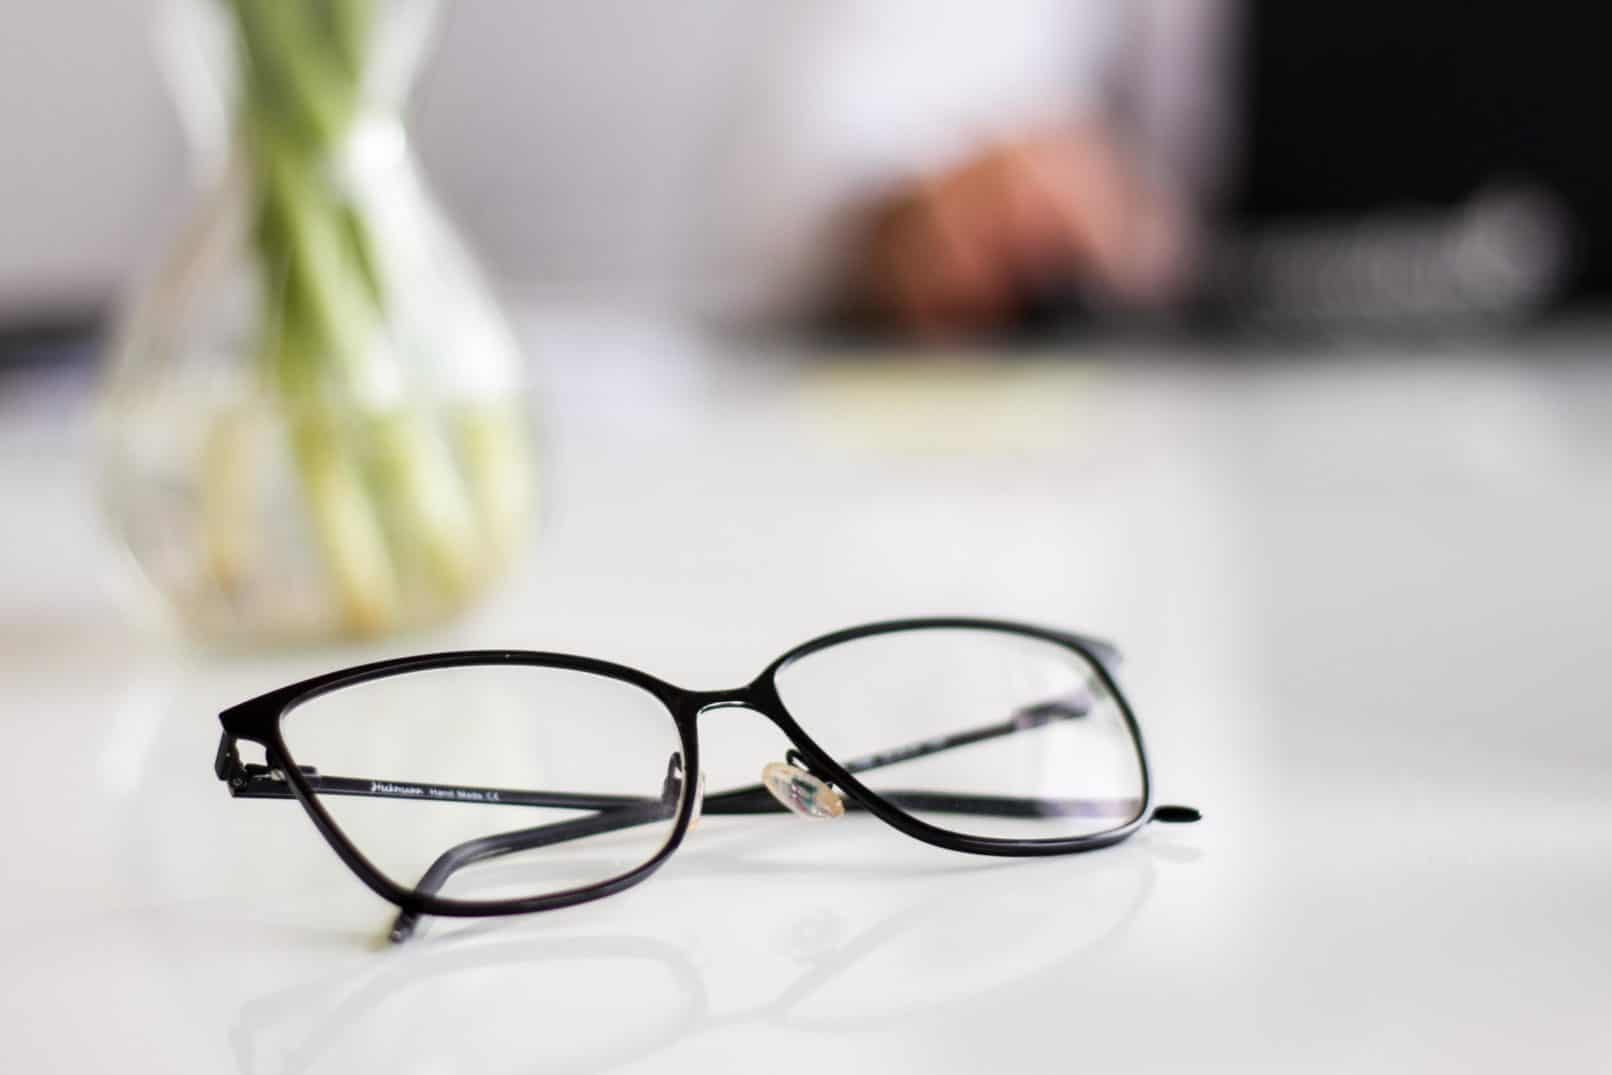 È vero che rimuovere spesso gli occhiali può curare gli occhi negativi? Ascolta cosa dice il dottore